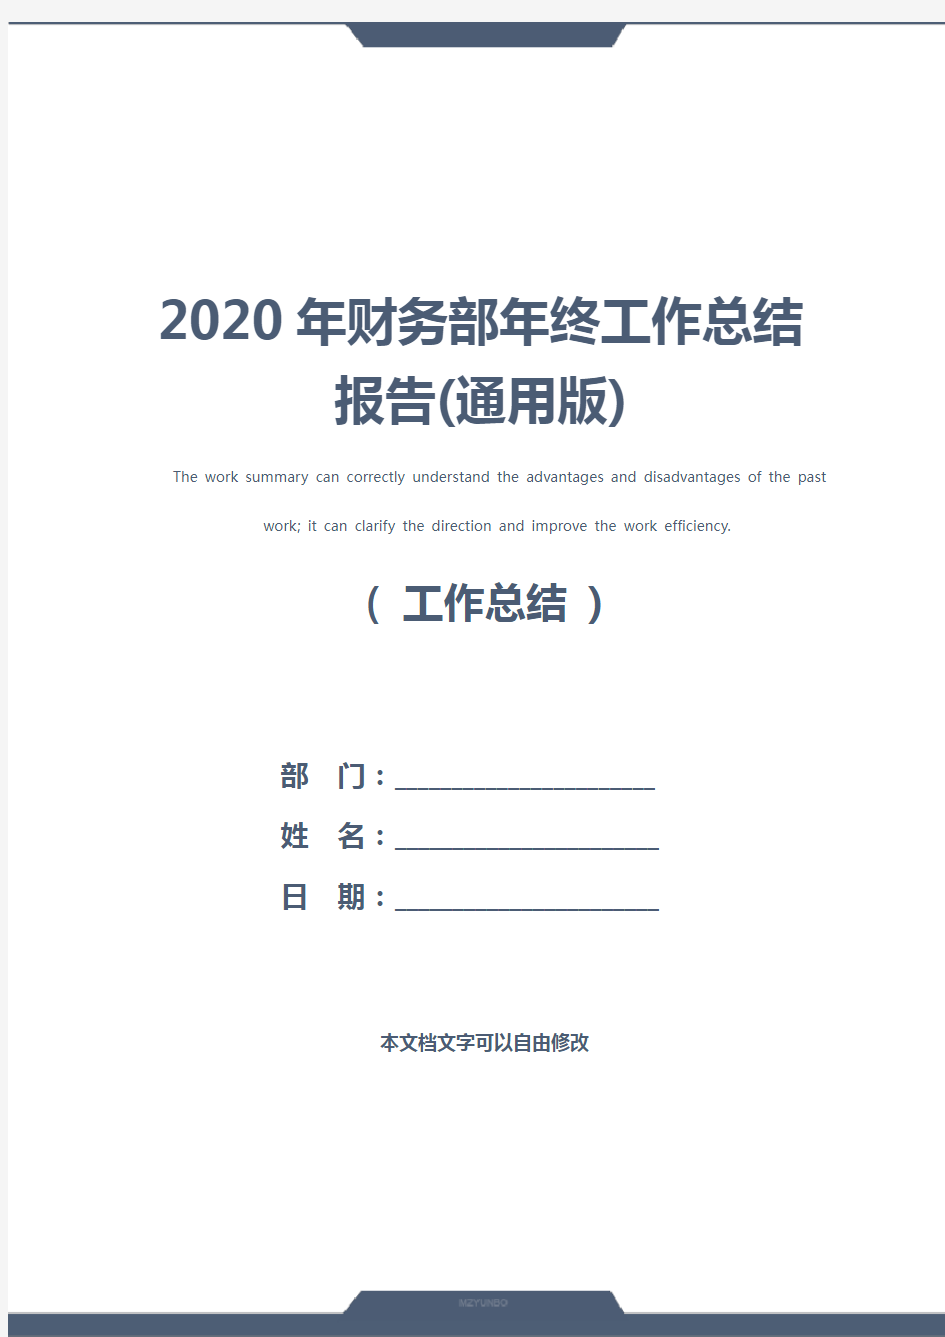 2020年财务部年终工作总结报告(通用版)